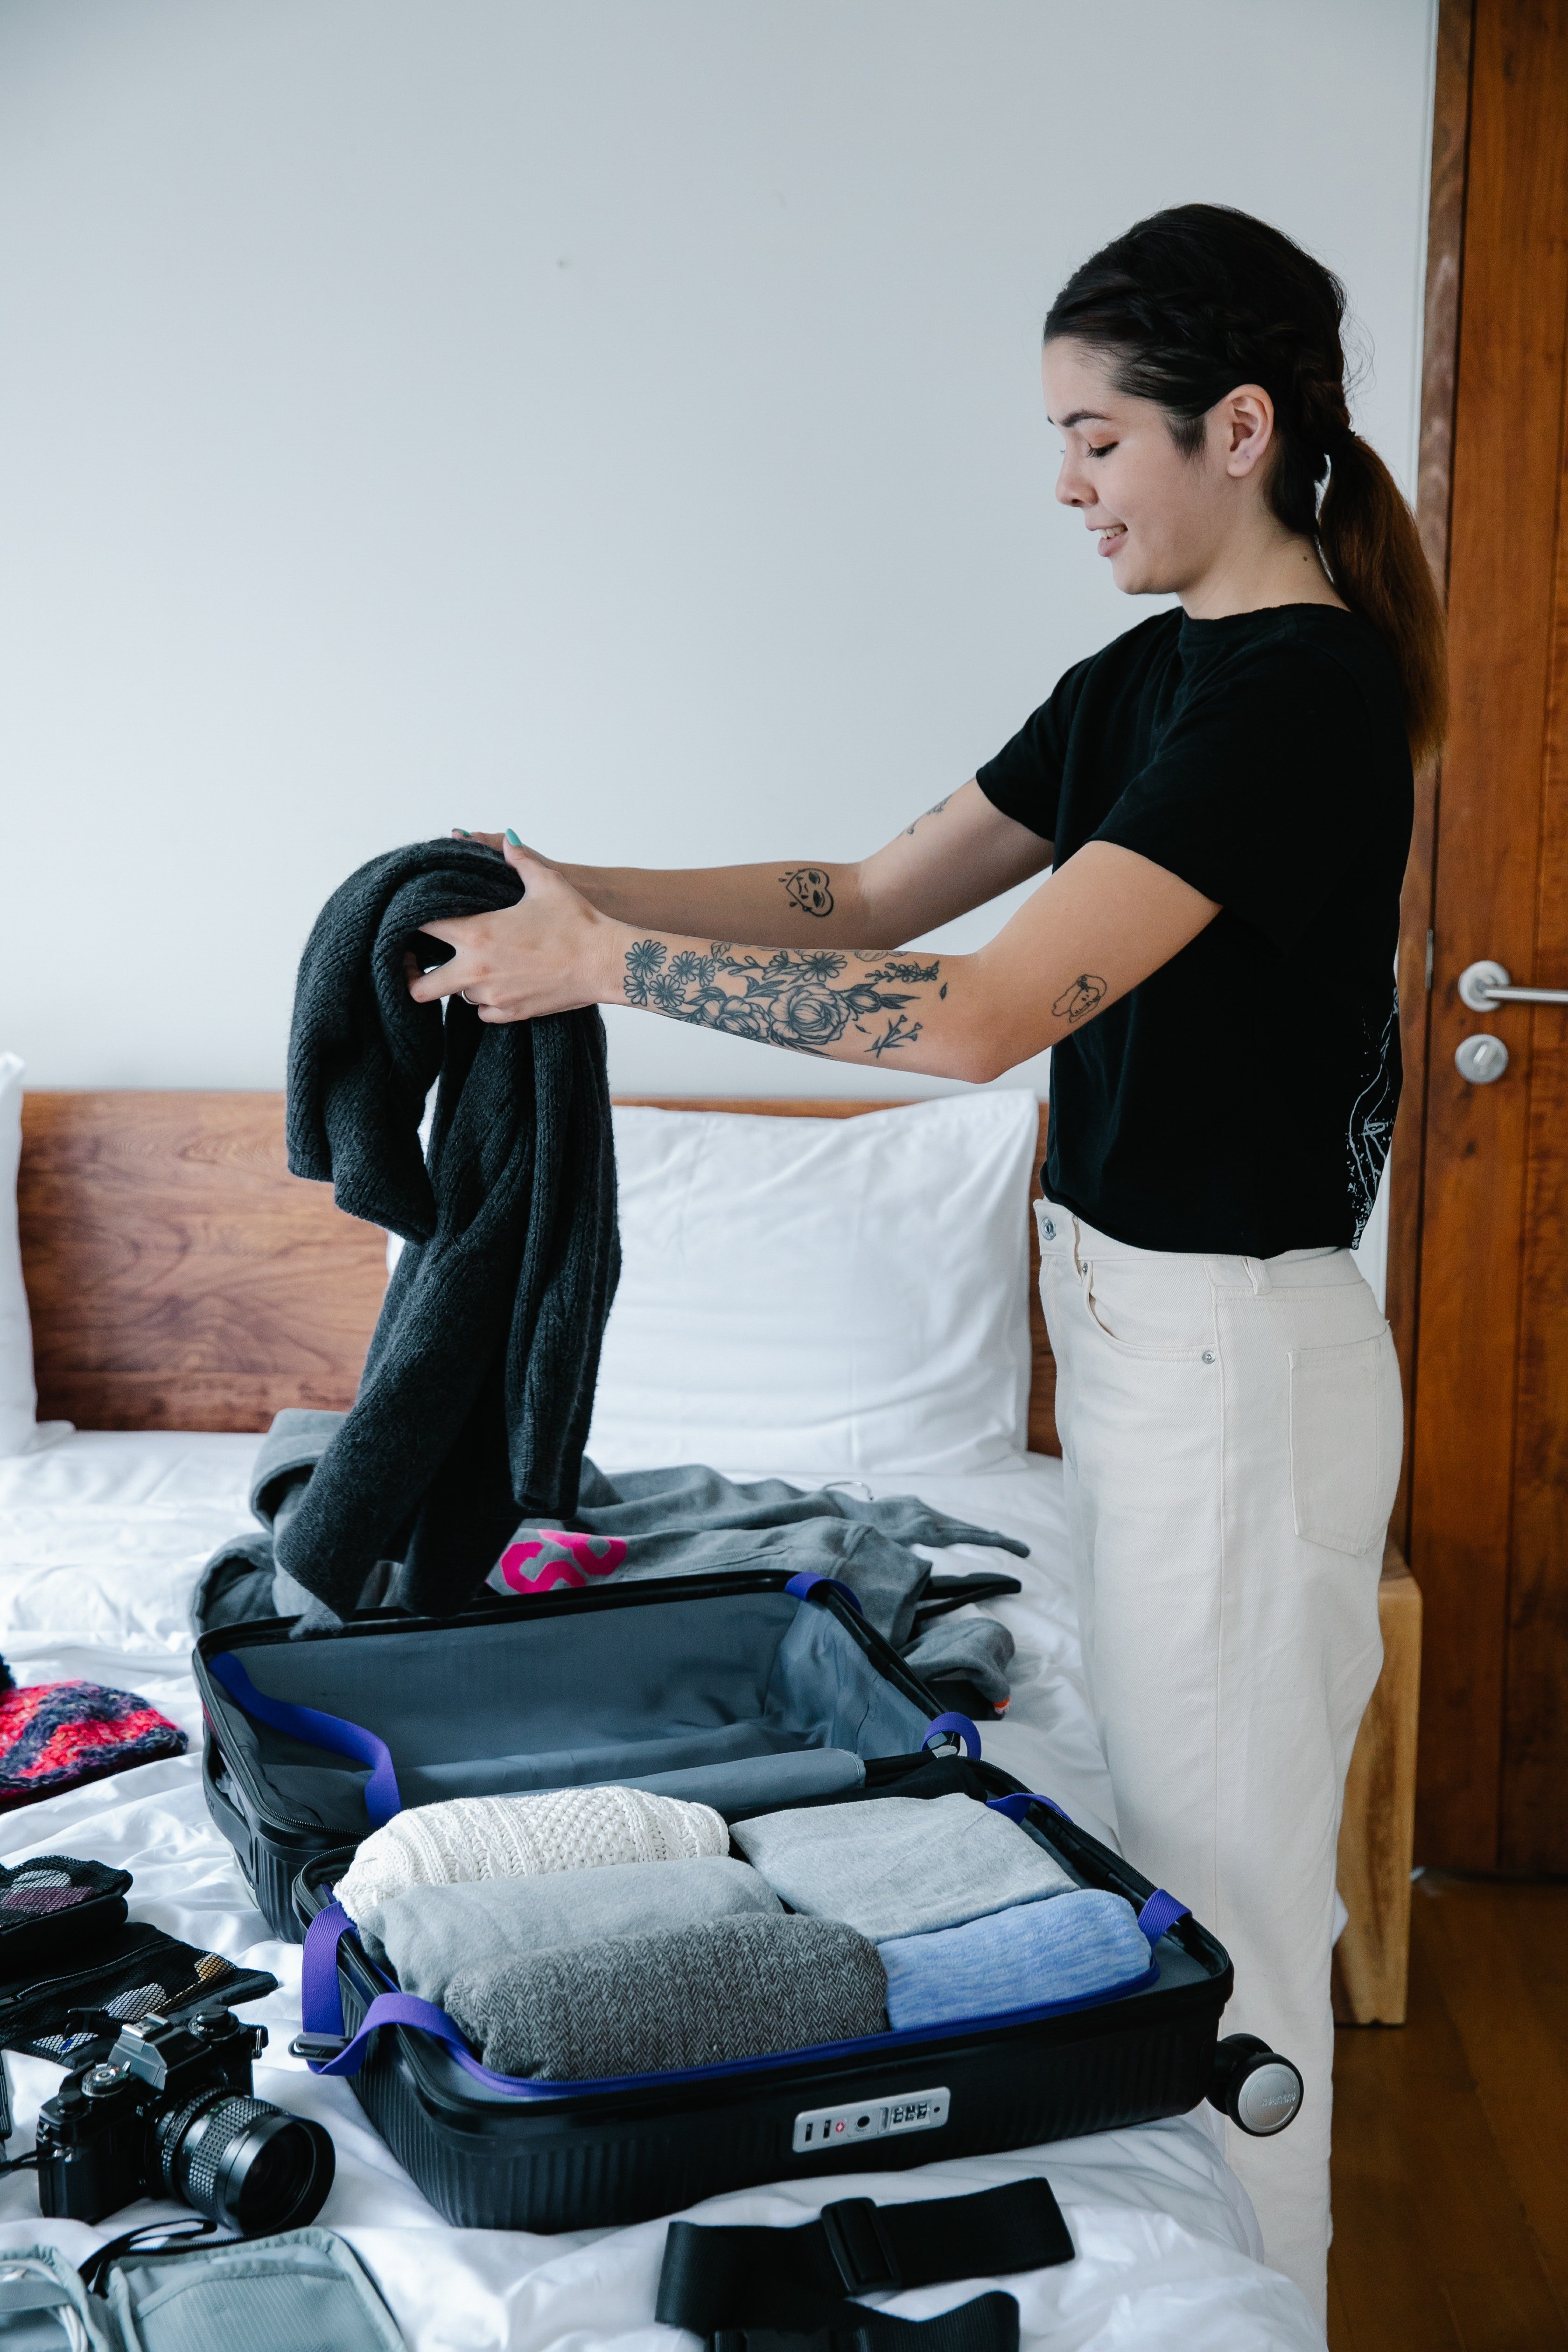 Mujer acomodando ropa en un maletín. | Foto: Pexels